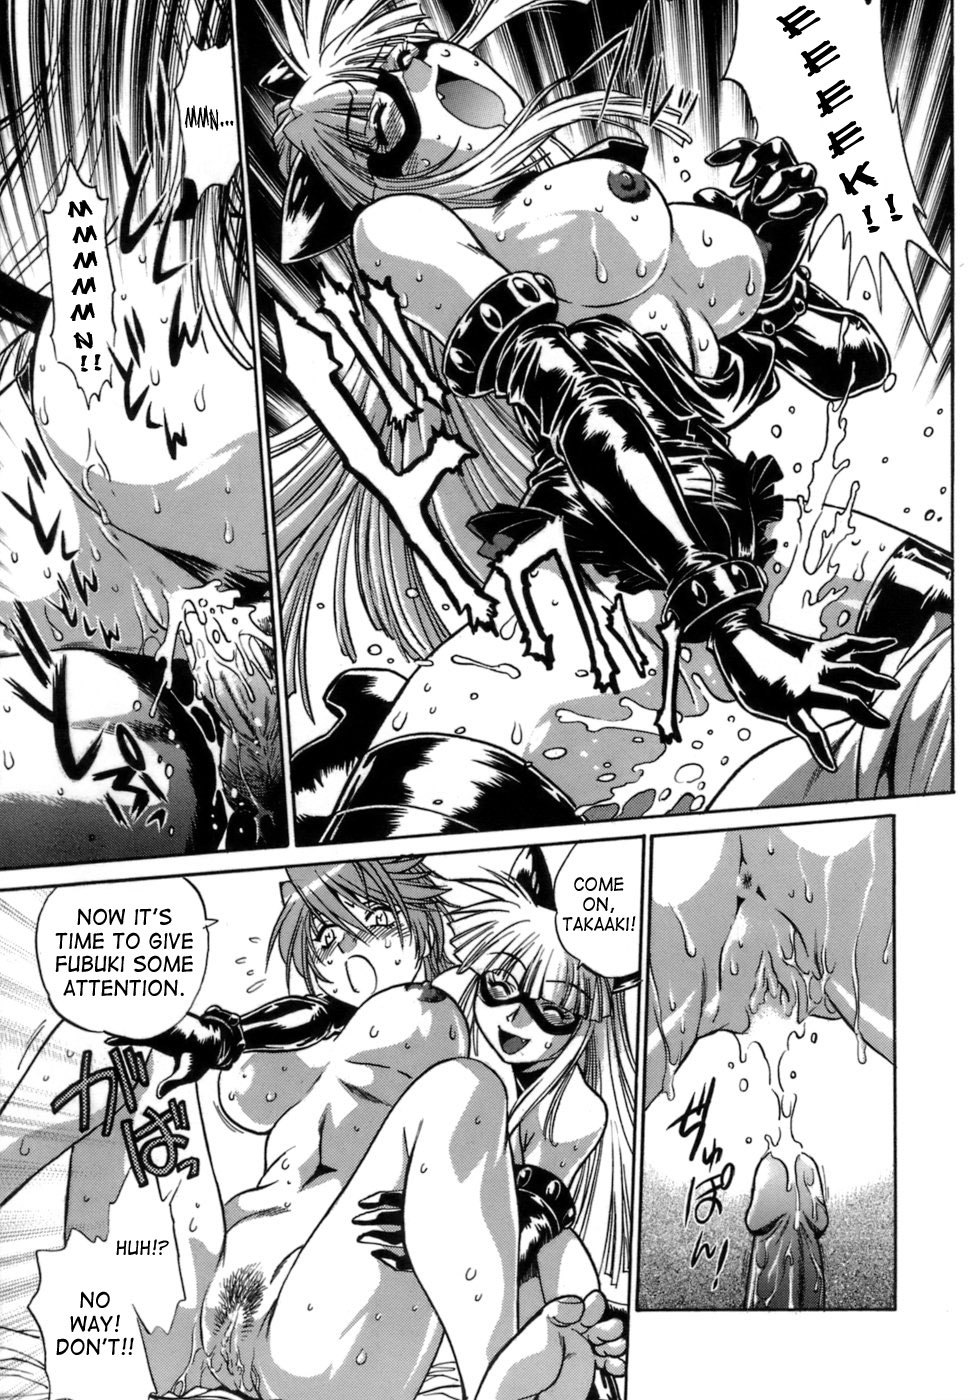 Tail Chaser Vol.1 91 hentai manga